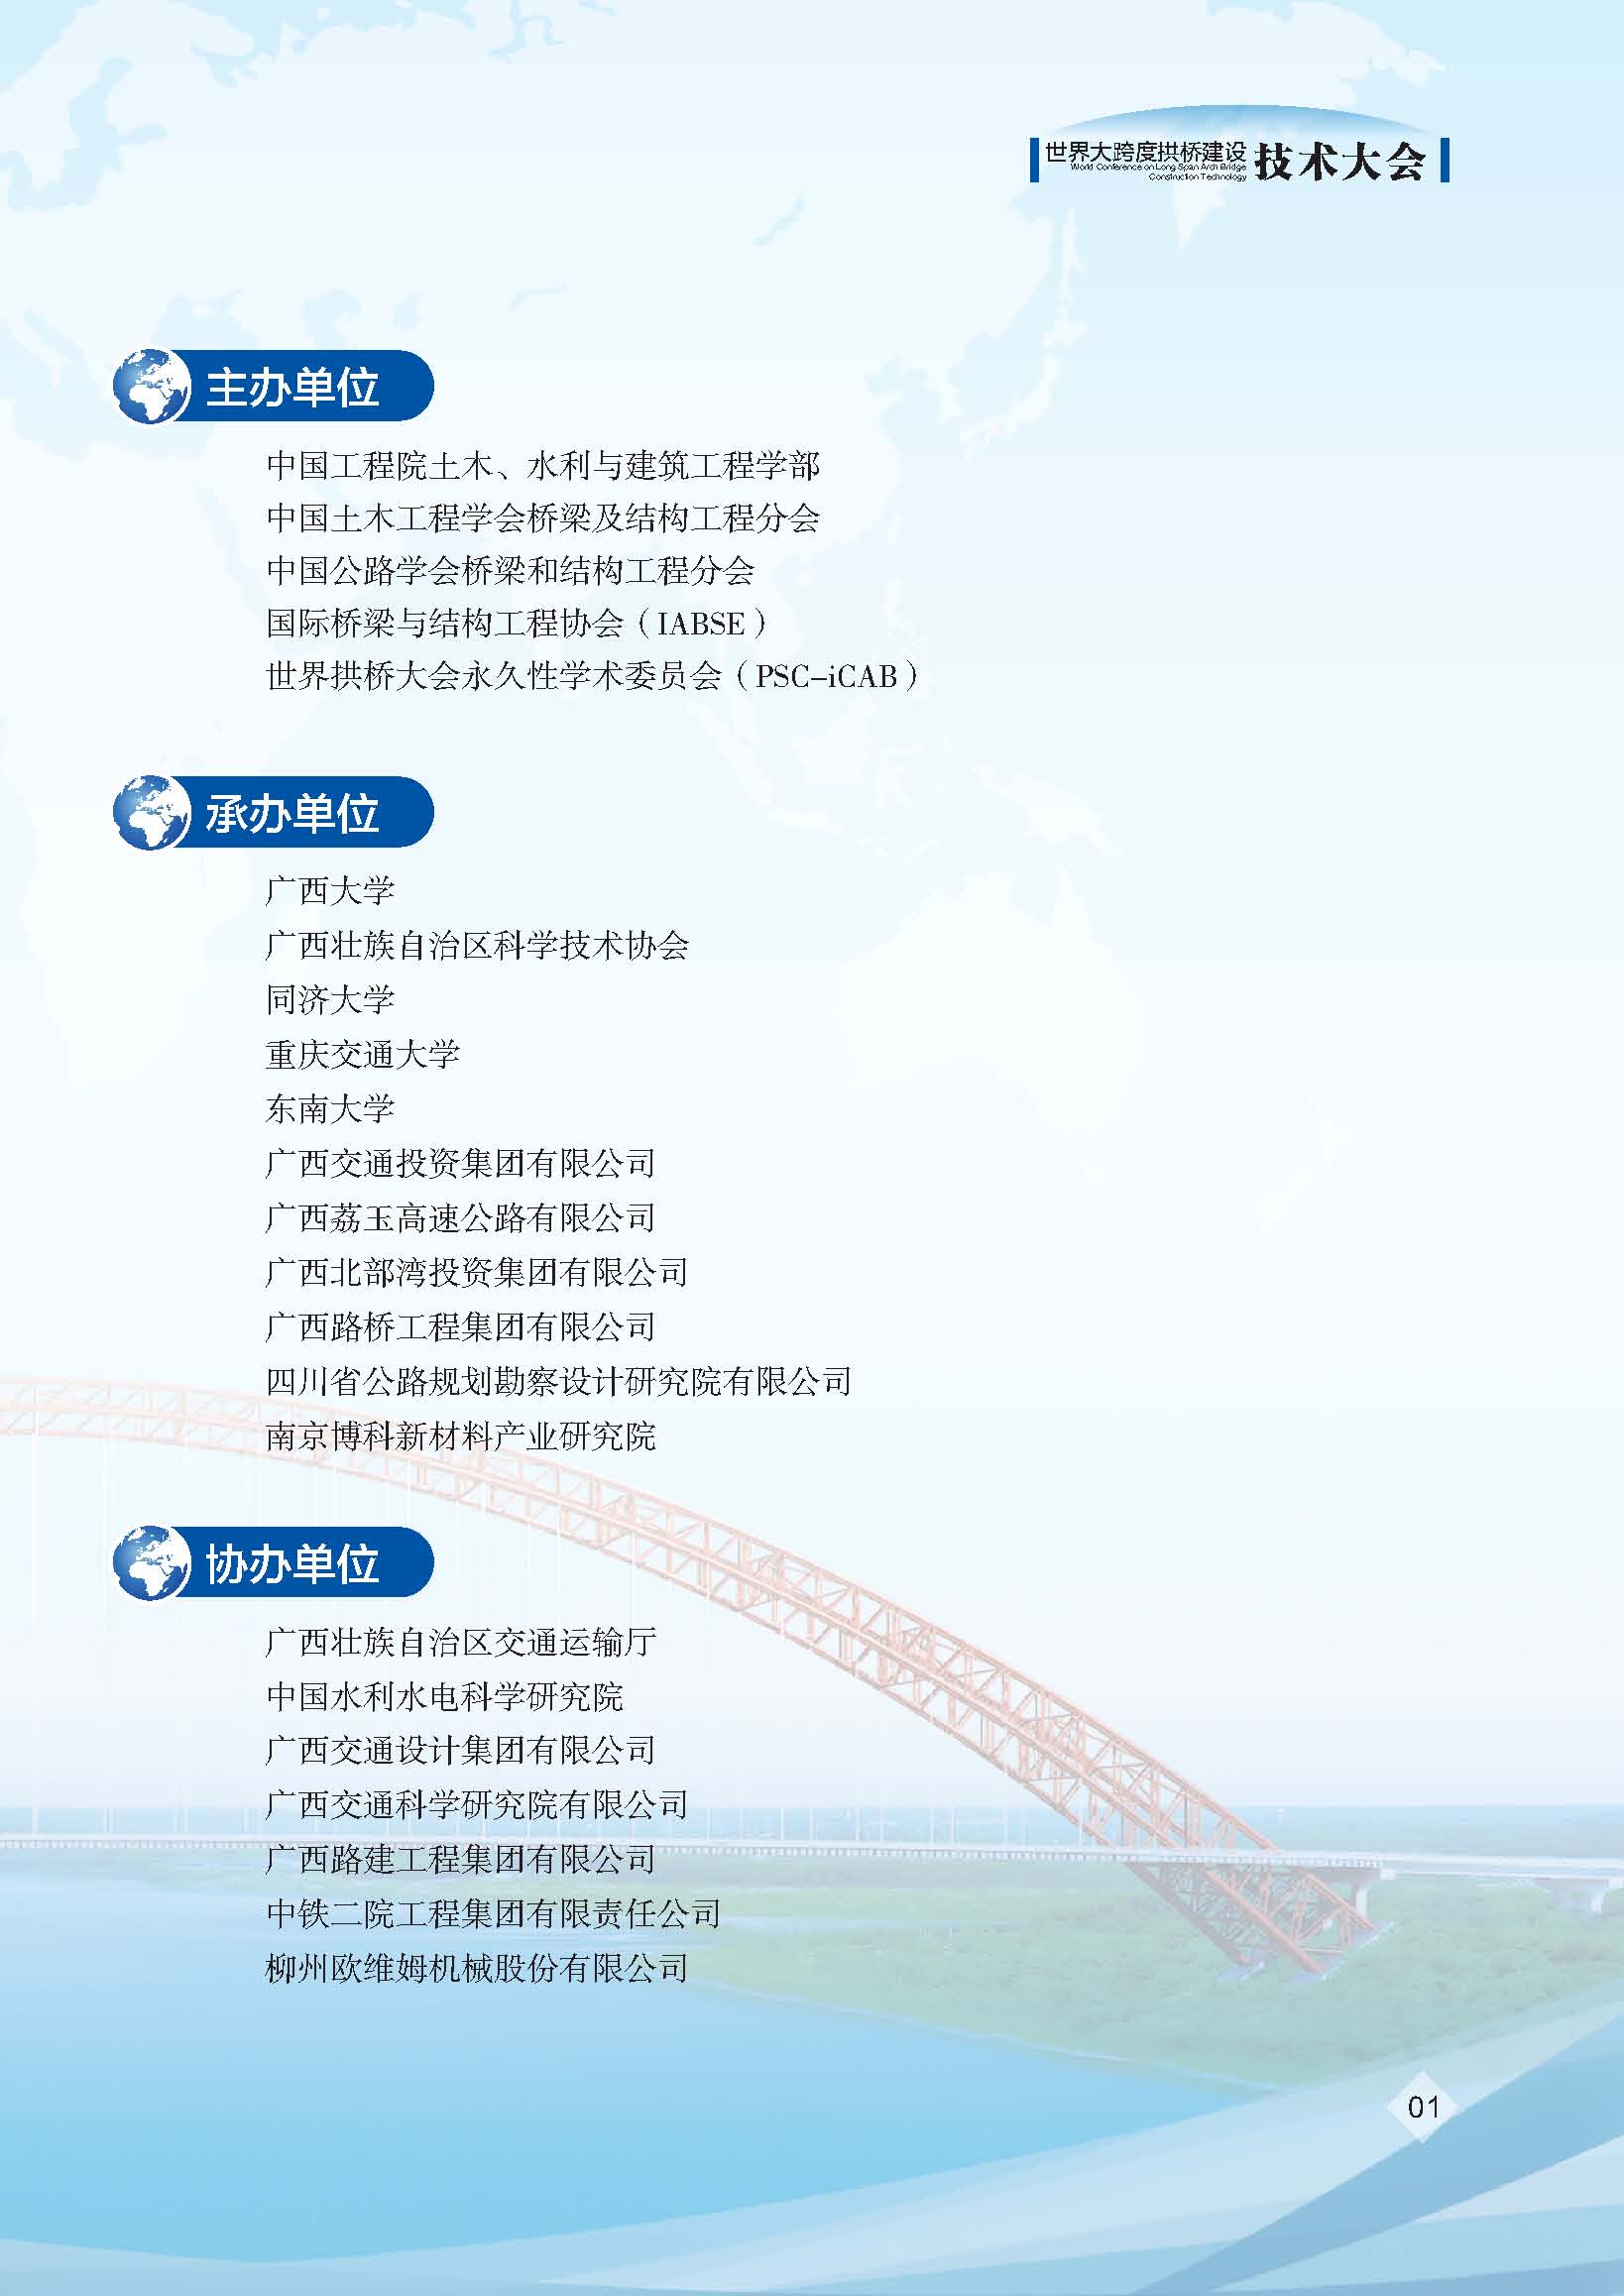 世界大跨度拱桥建设技术大会资料2号通知_页面_03